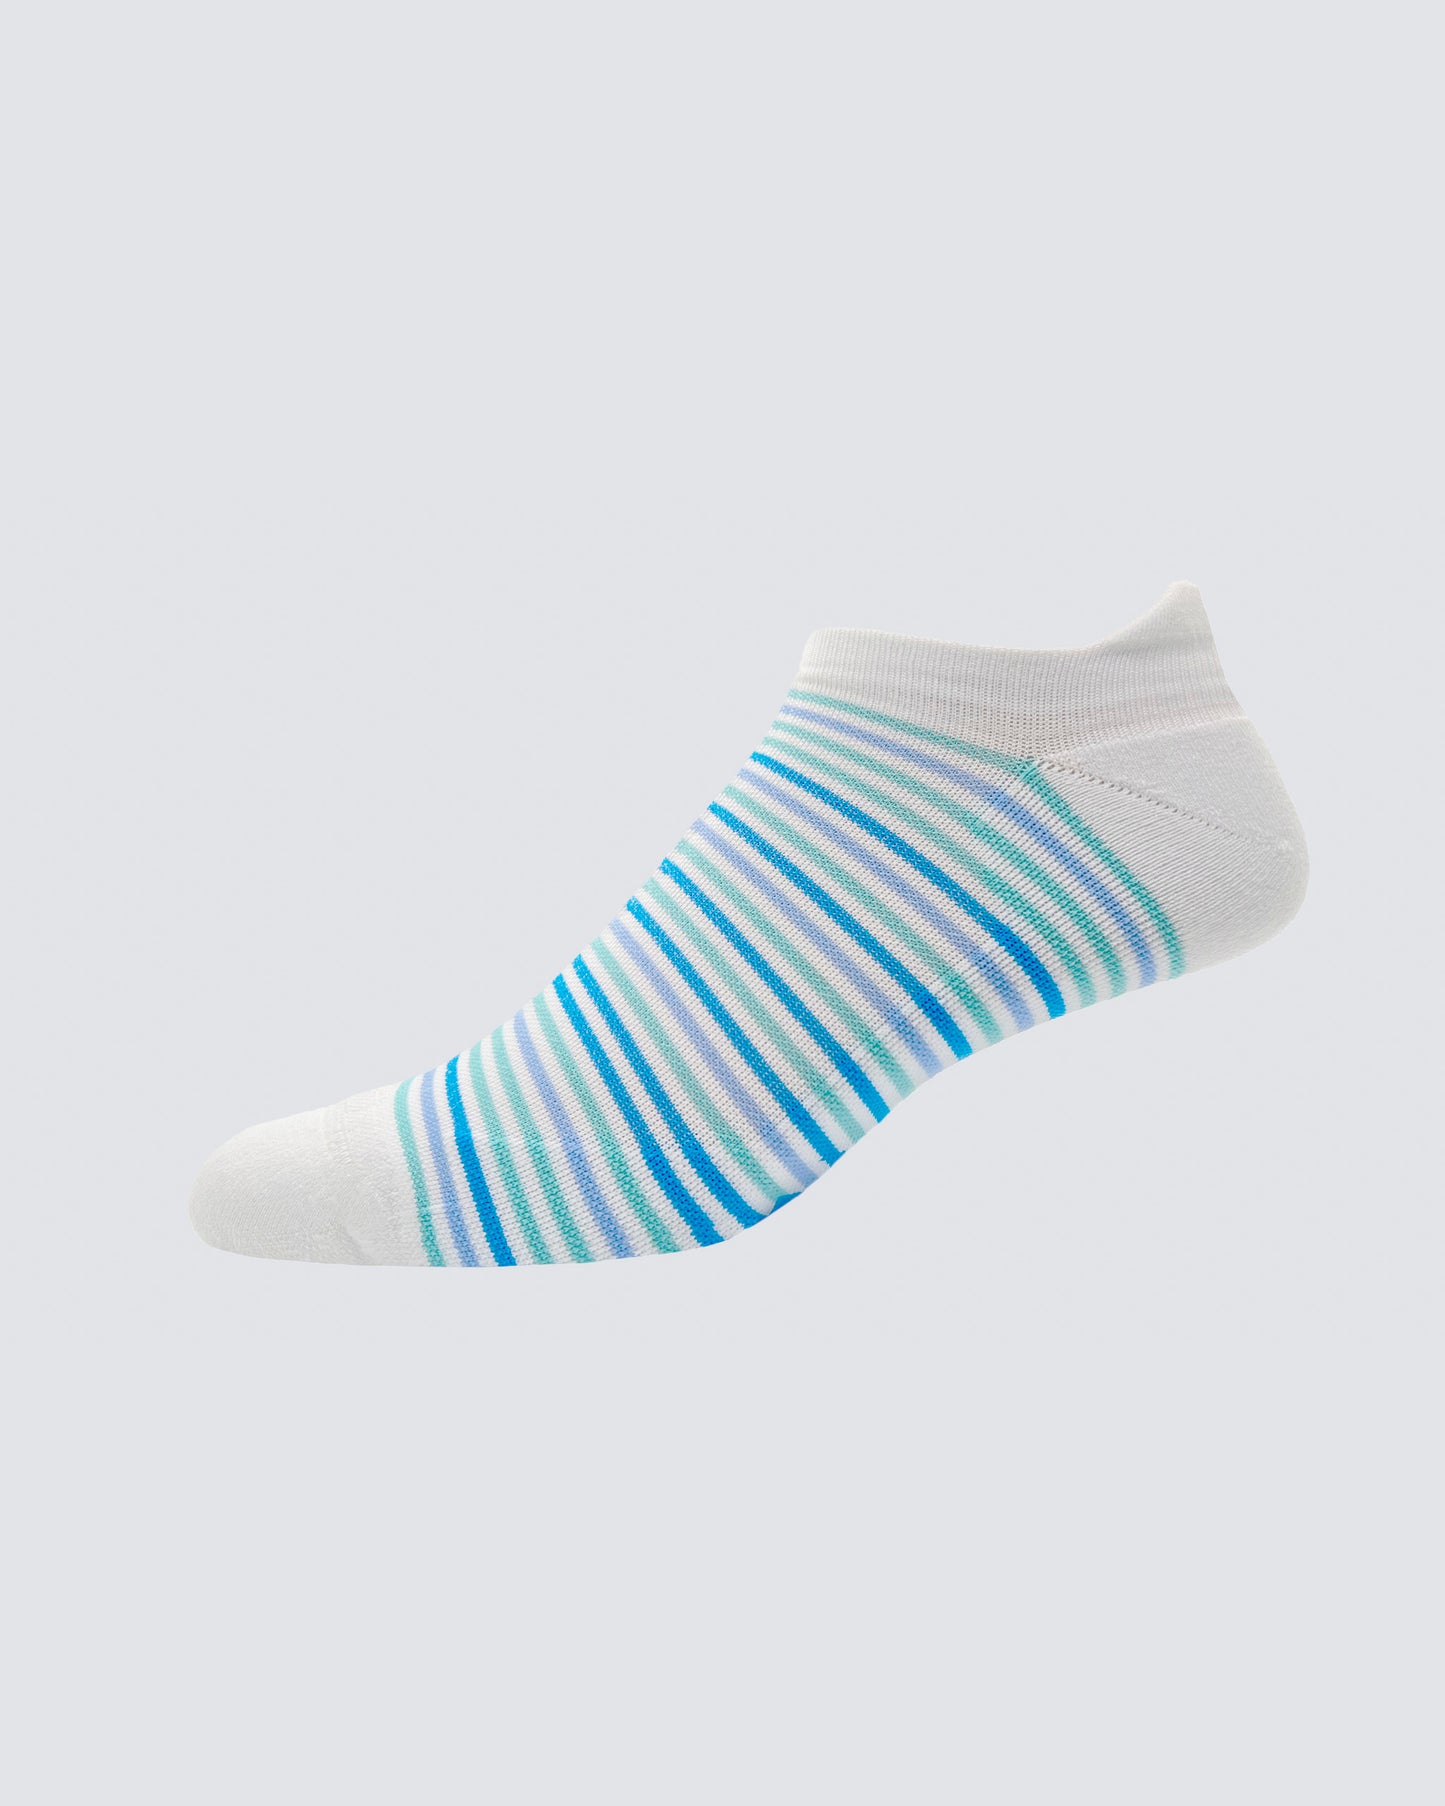 Dudley Stripe Socks in White